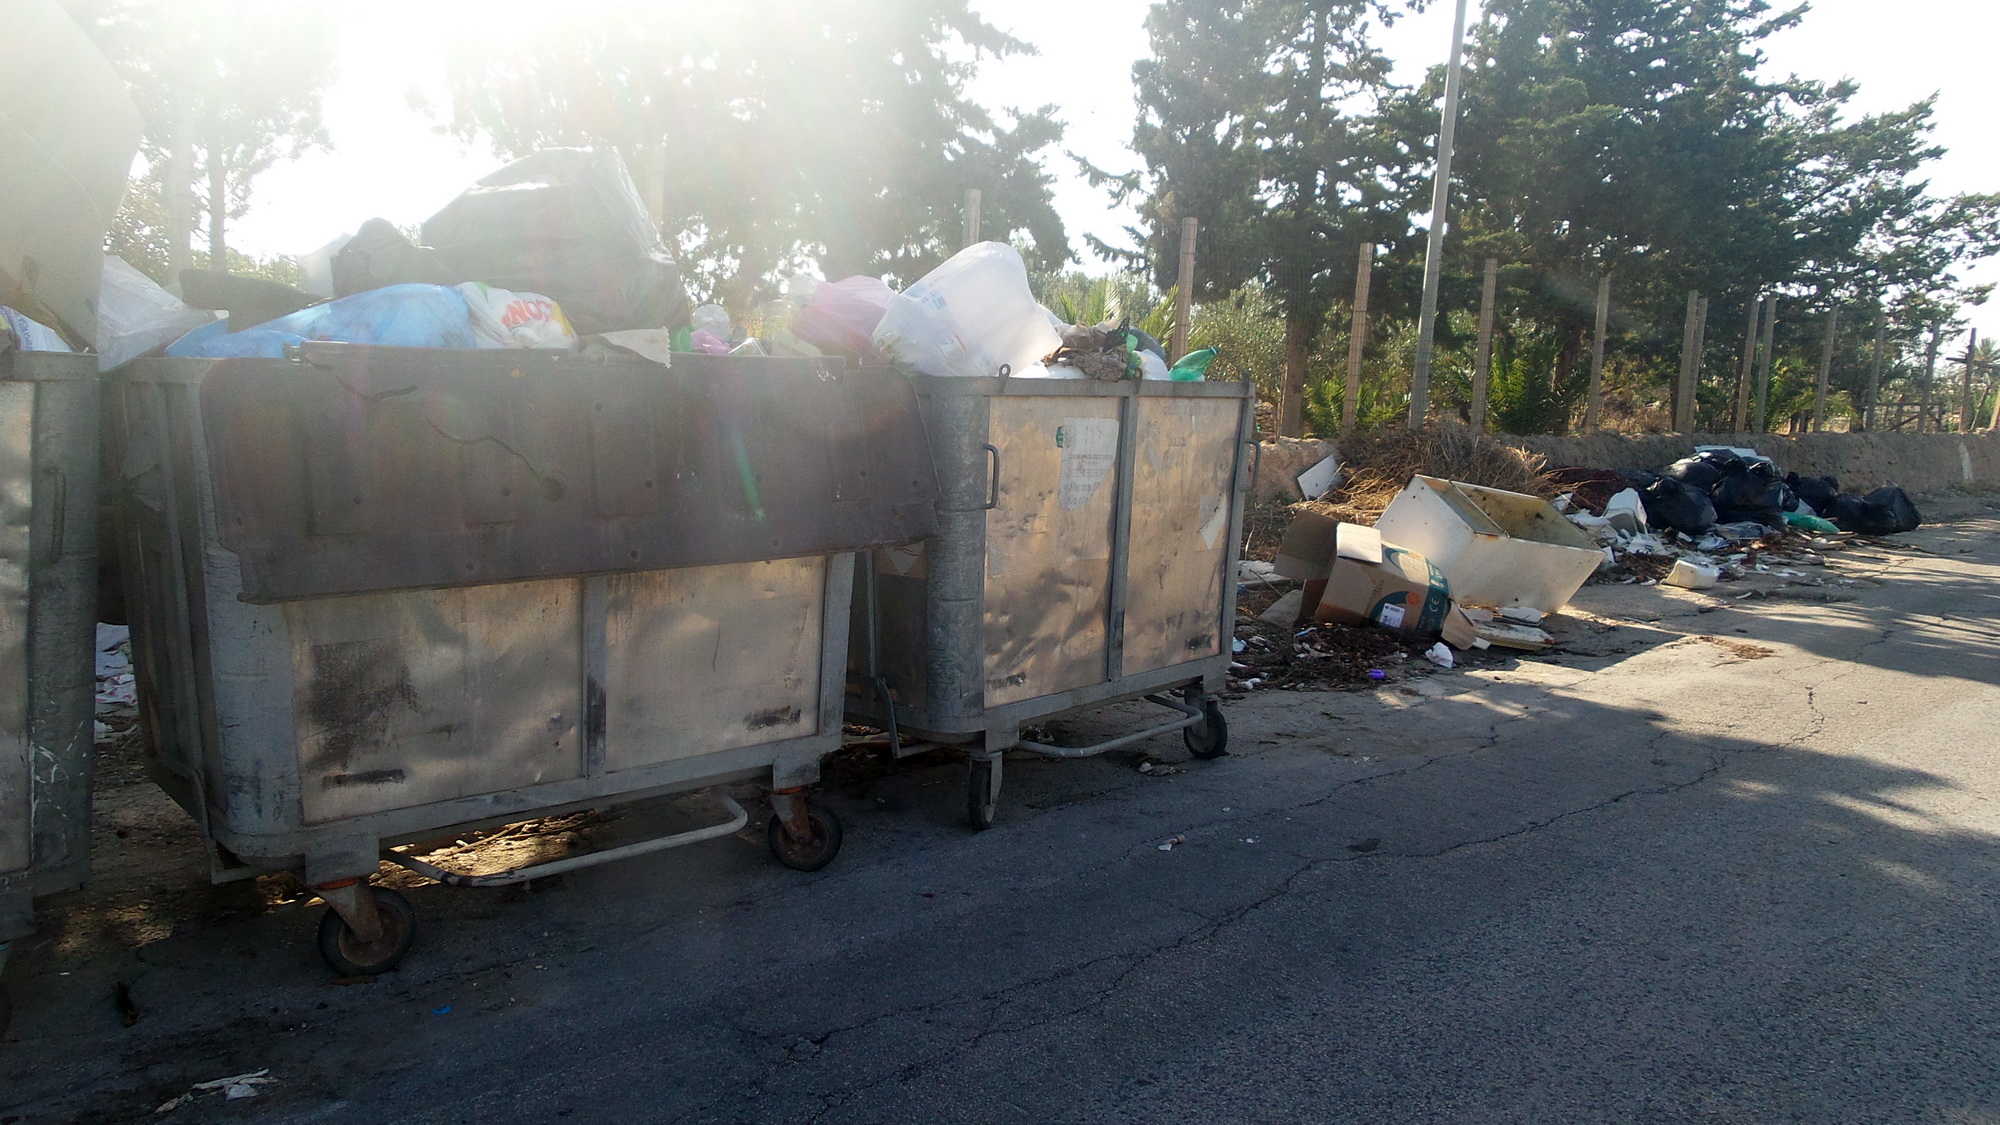  Emergenza rifiuti, il sindaco: “Lotta senza quartiere contro gli incivili”